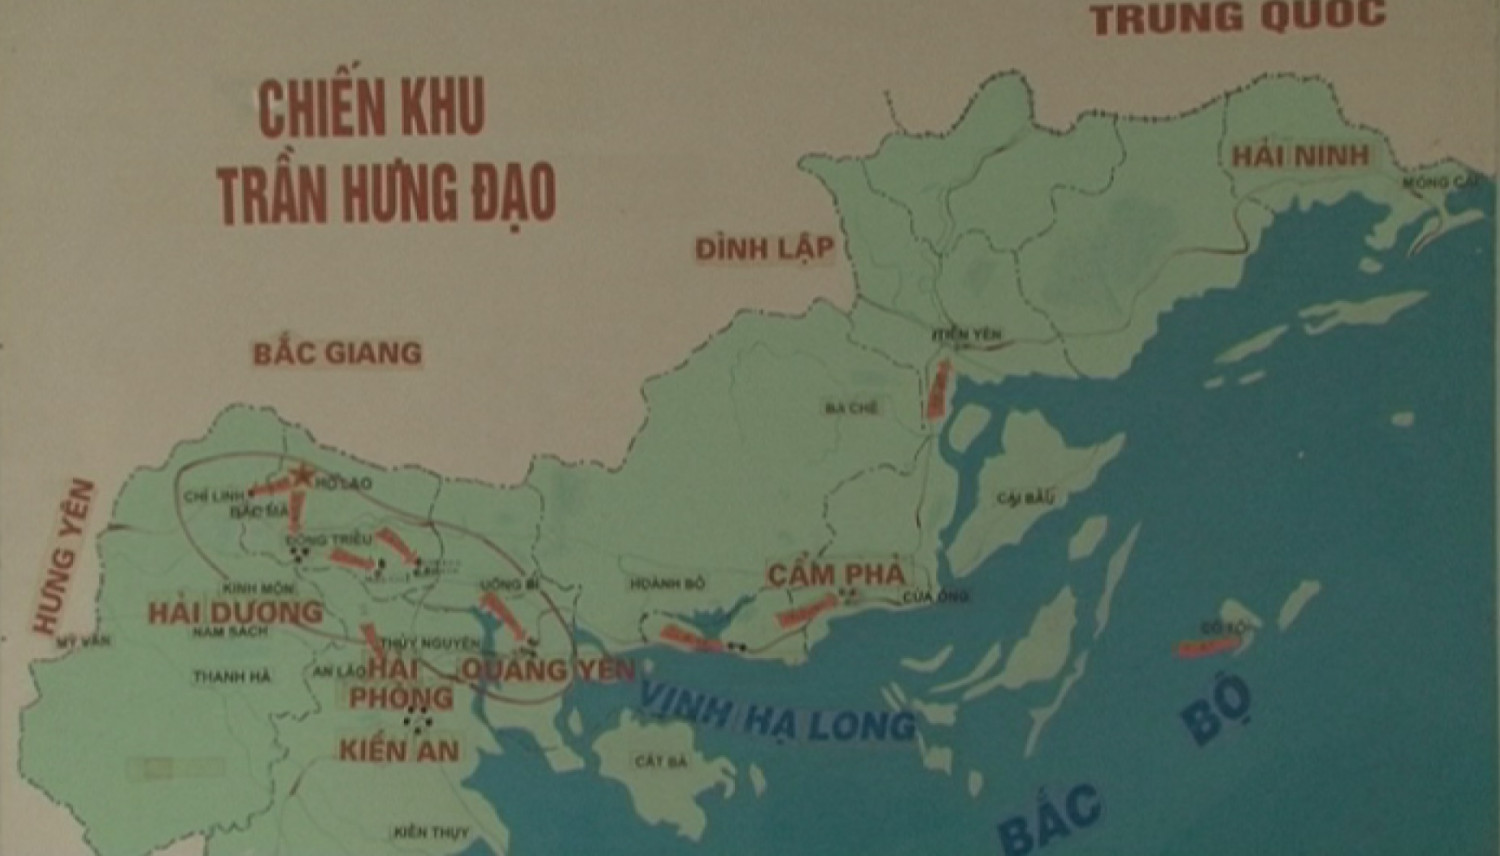 Chiến khu Trần Hưng Đạo - địa danh đánh dấu sự ra đời lực lượng tiền thân của Công an tỉnh Quảng Ninh.